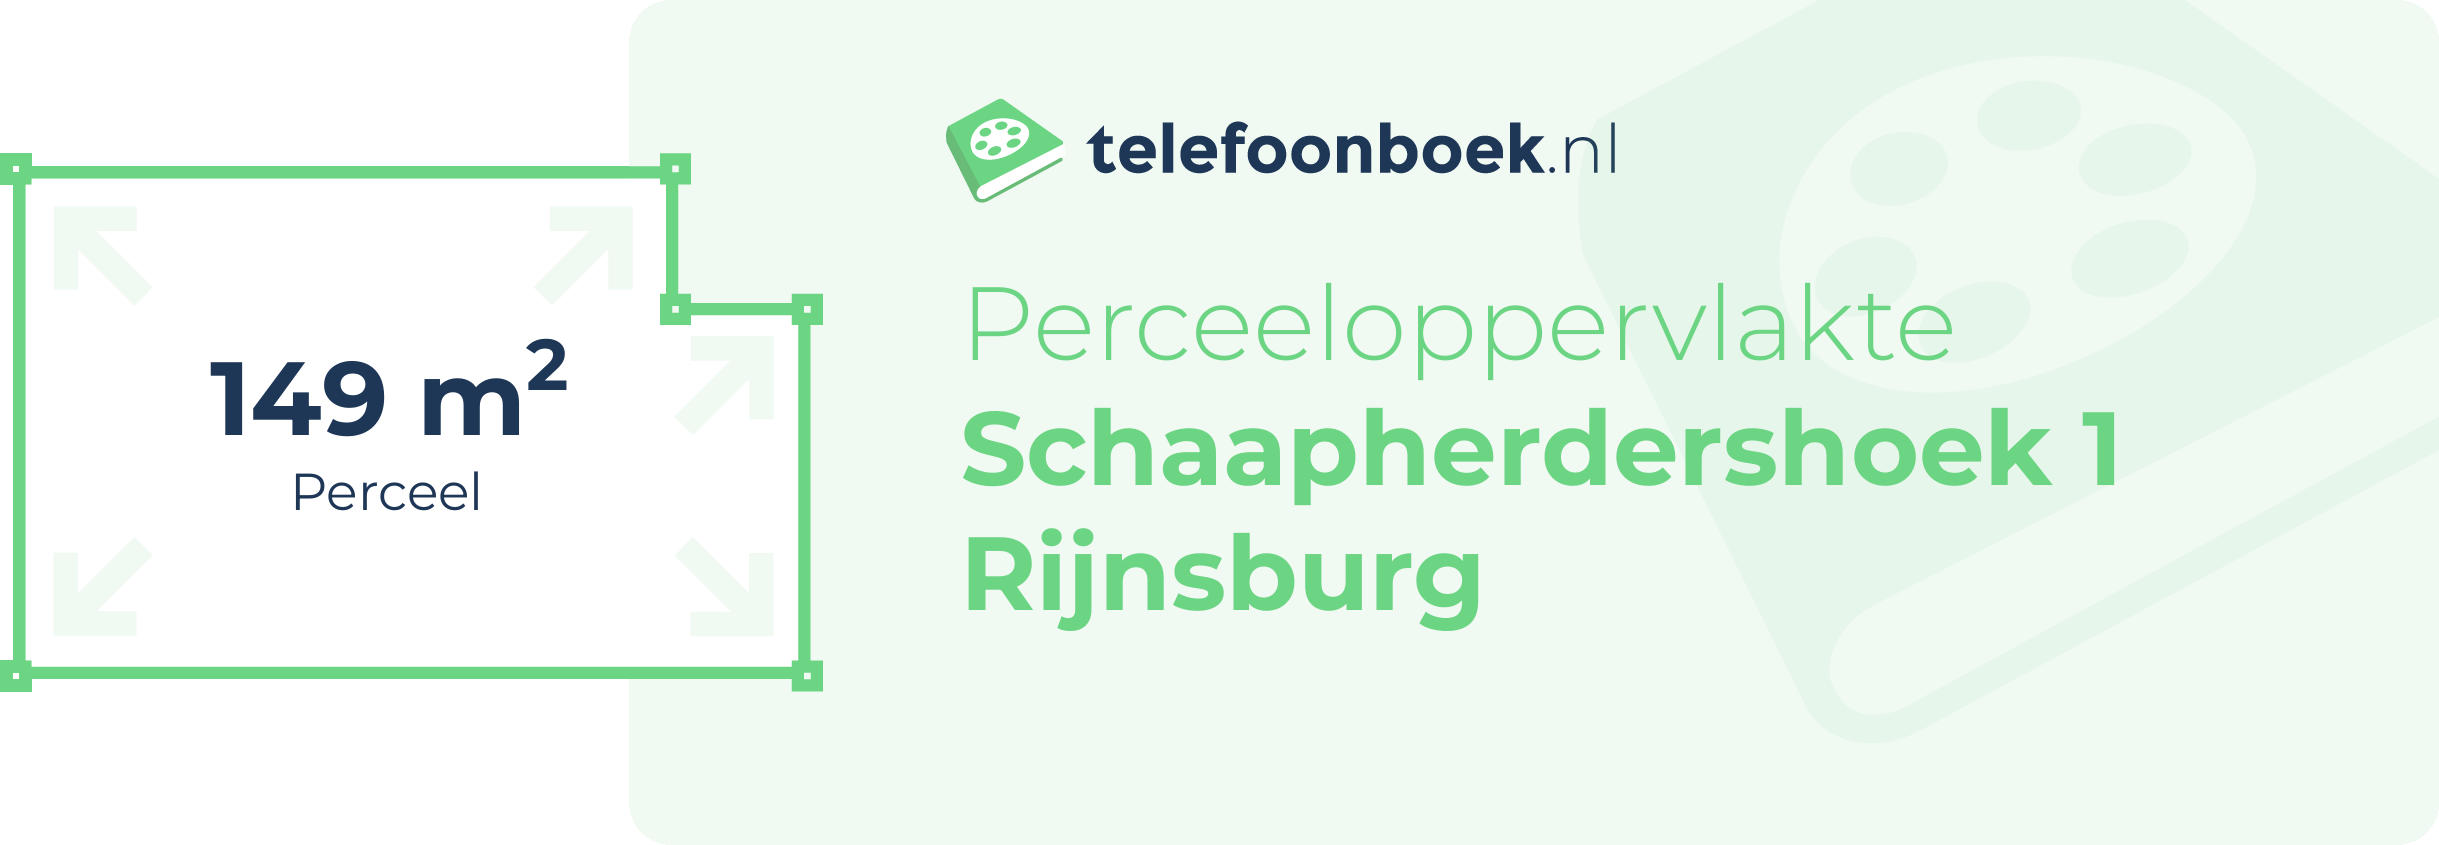 Perceeloppervlakte Schaapherdershoek 1 Rijnsburg